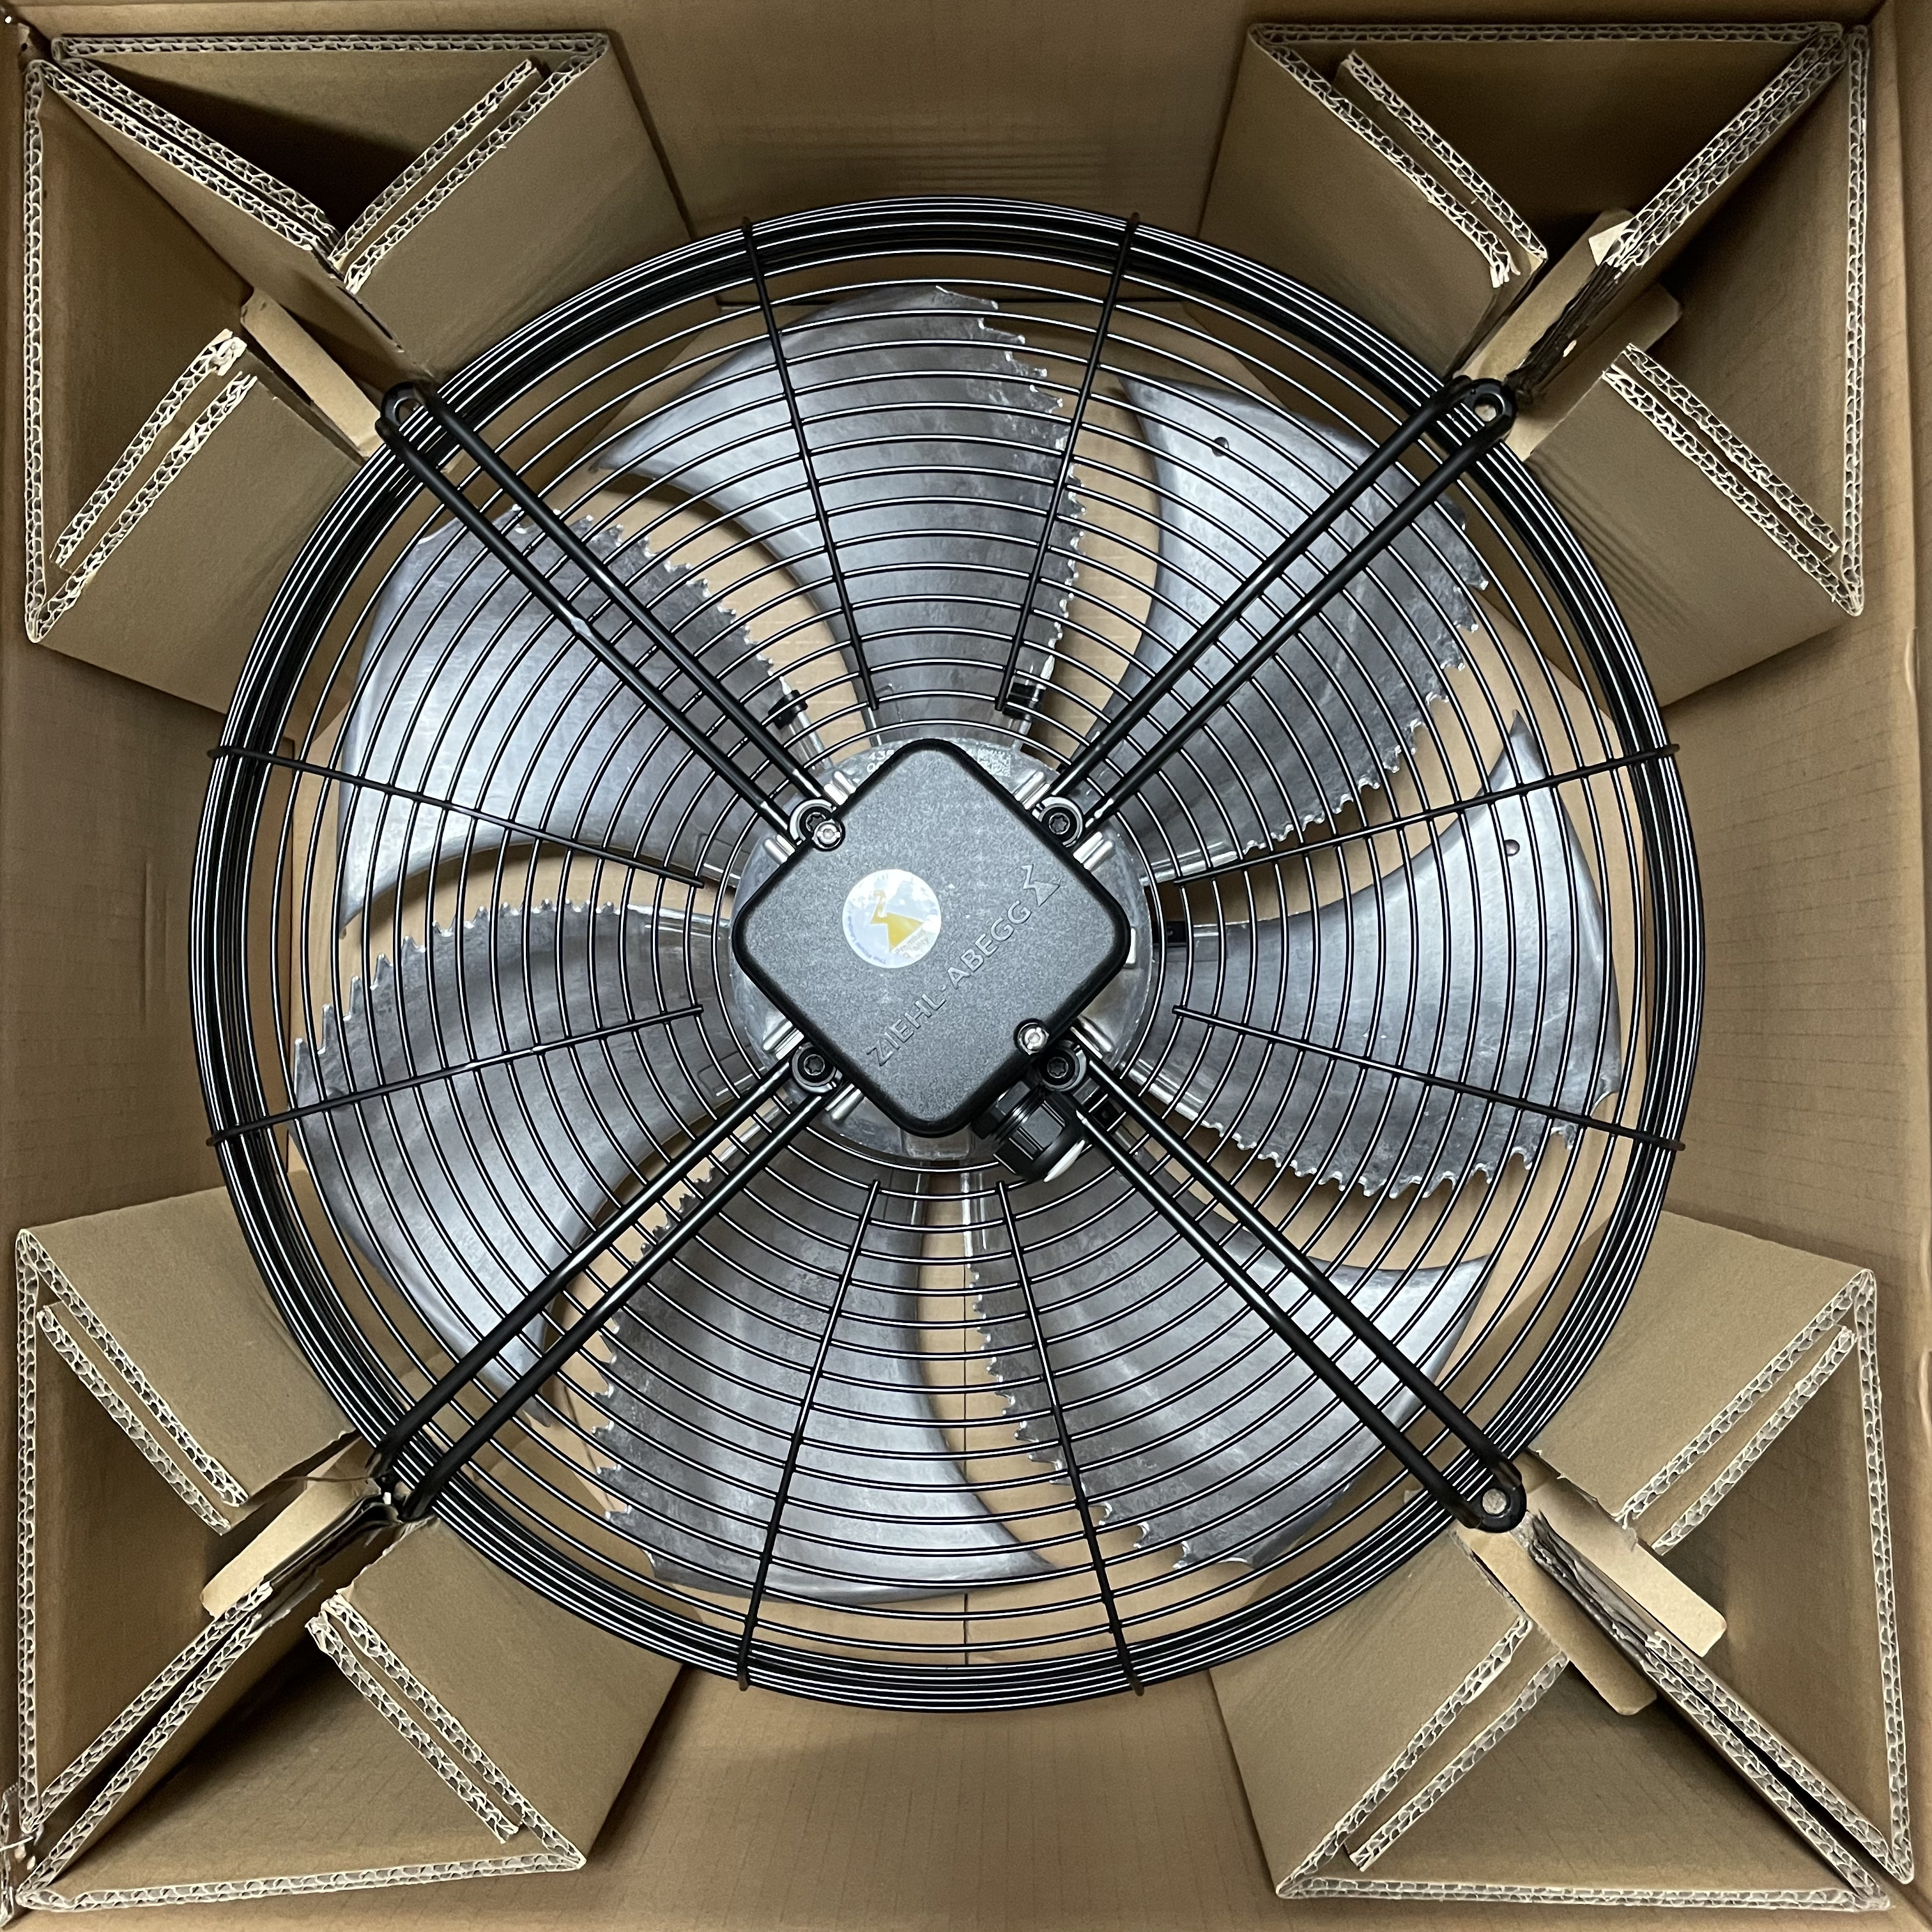 ZIEHL-ABEGG Industrial AC Cooling Fan FN050-VDK.4I.V7P1